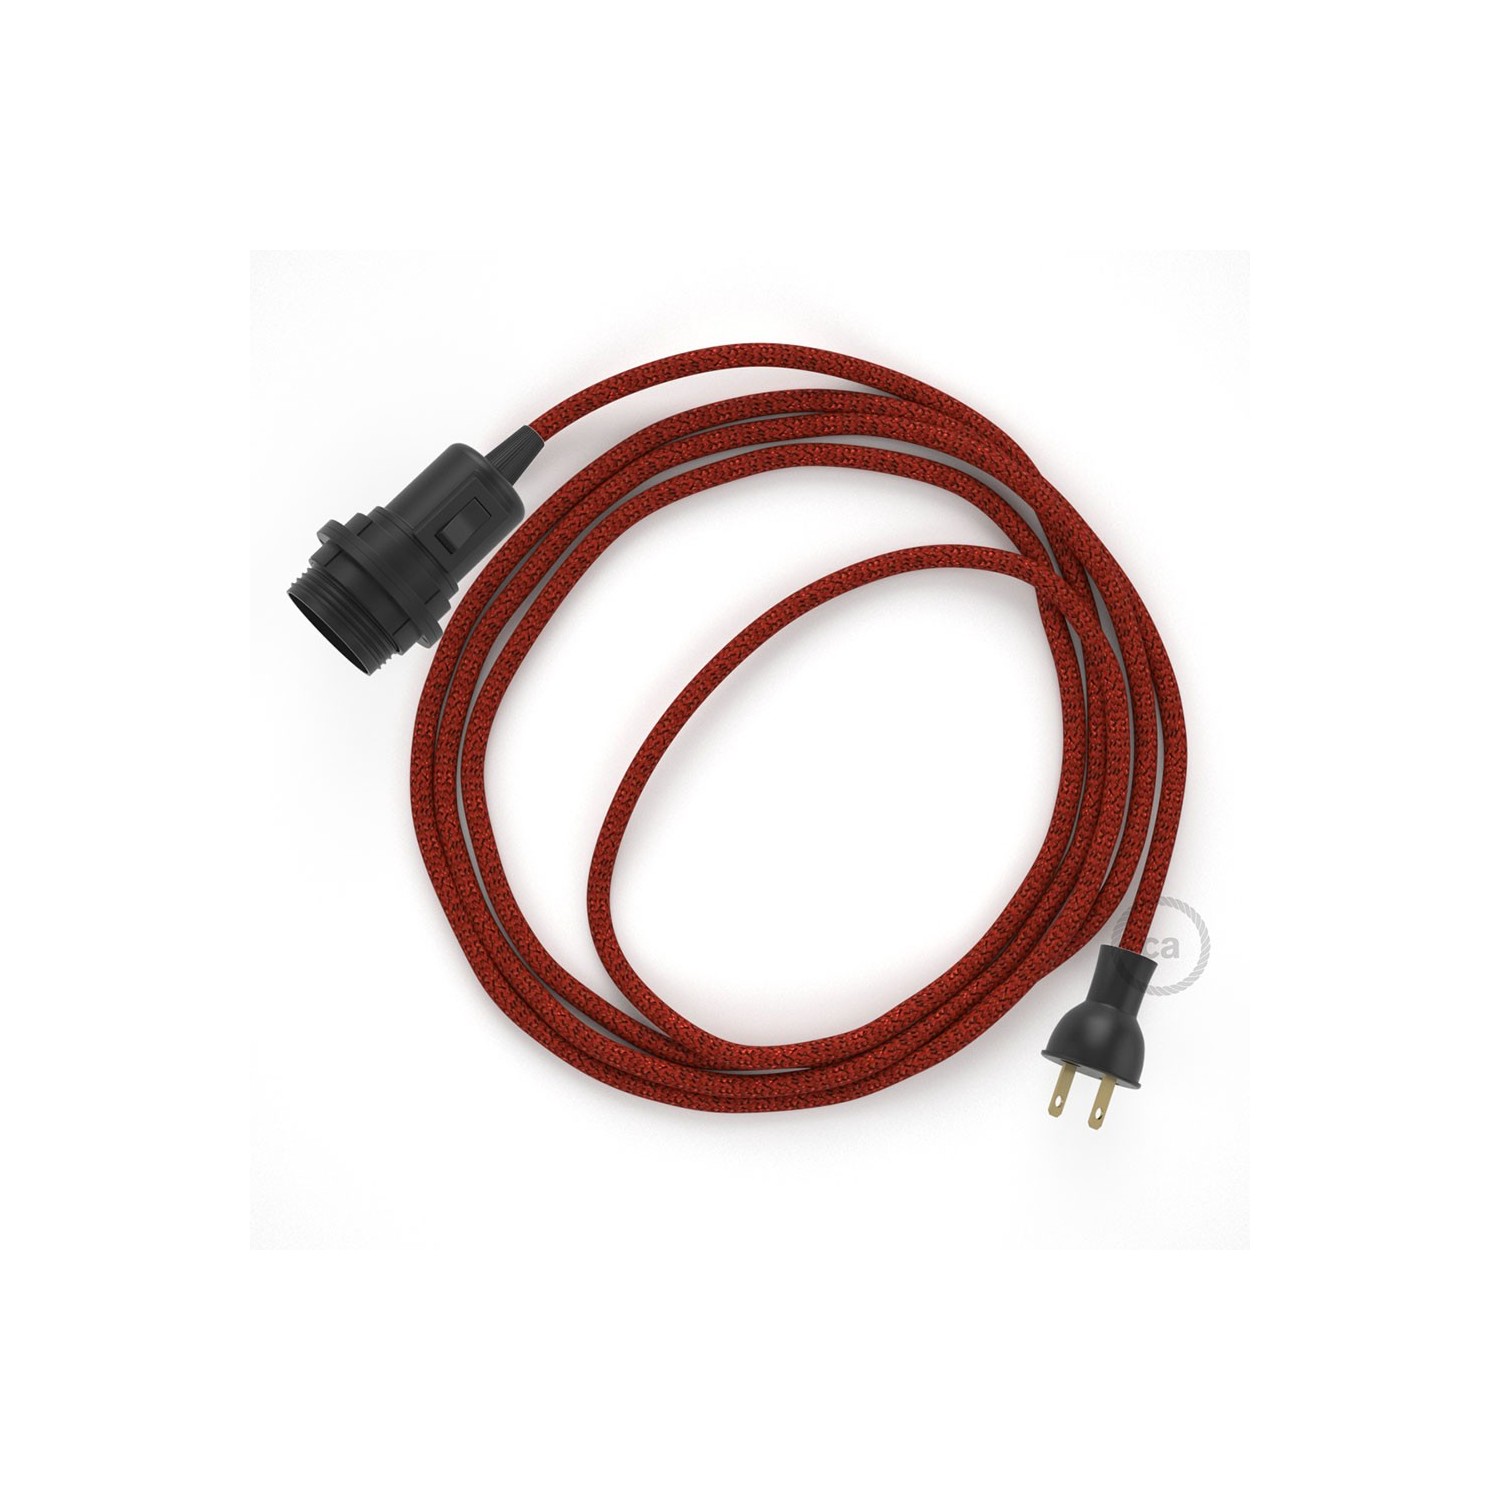 Crea tu Snake para pantalla con cable Brillante Rojo RL09, socket y enchufe, y trae la luz donde tu quieras.